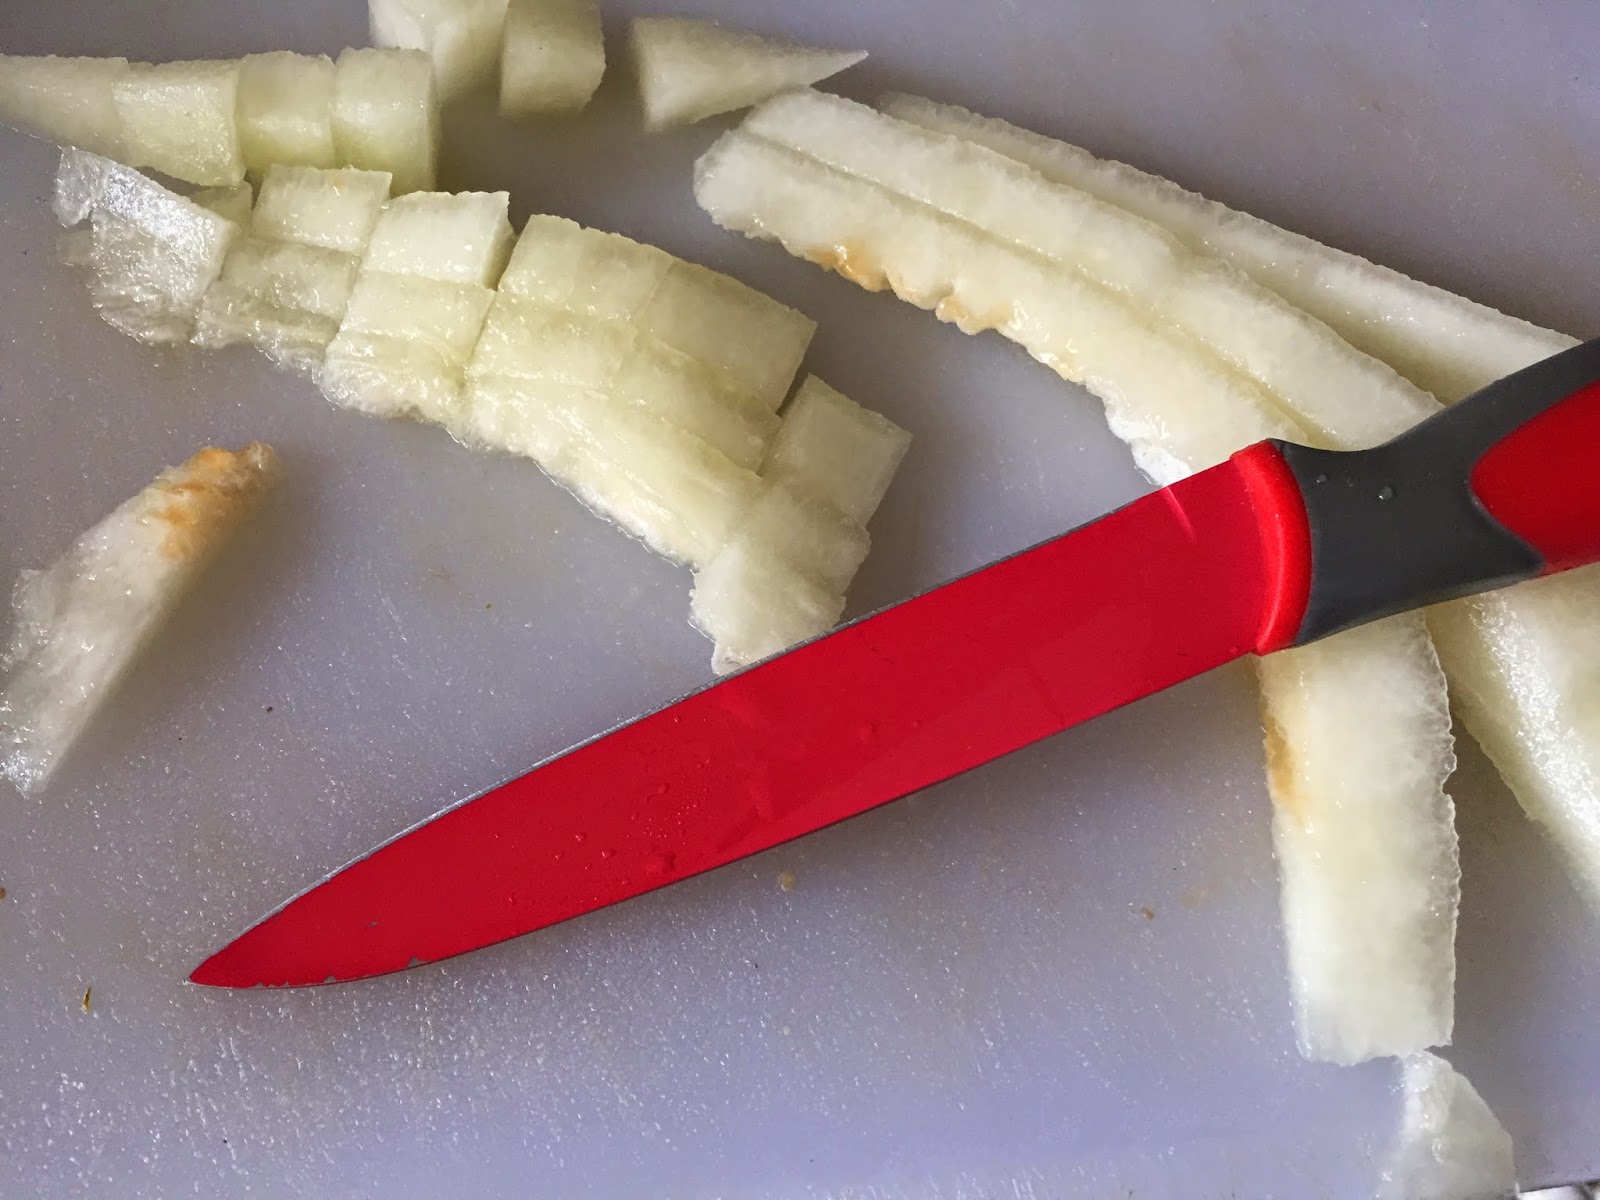 Rollitos de cecina rellenos de melón y queso, cortando melón platinum.